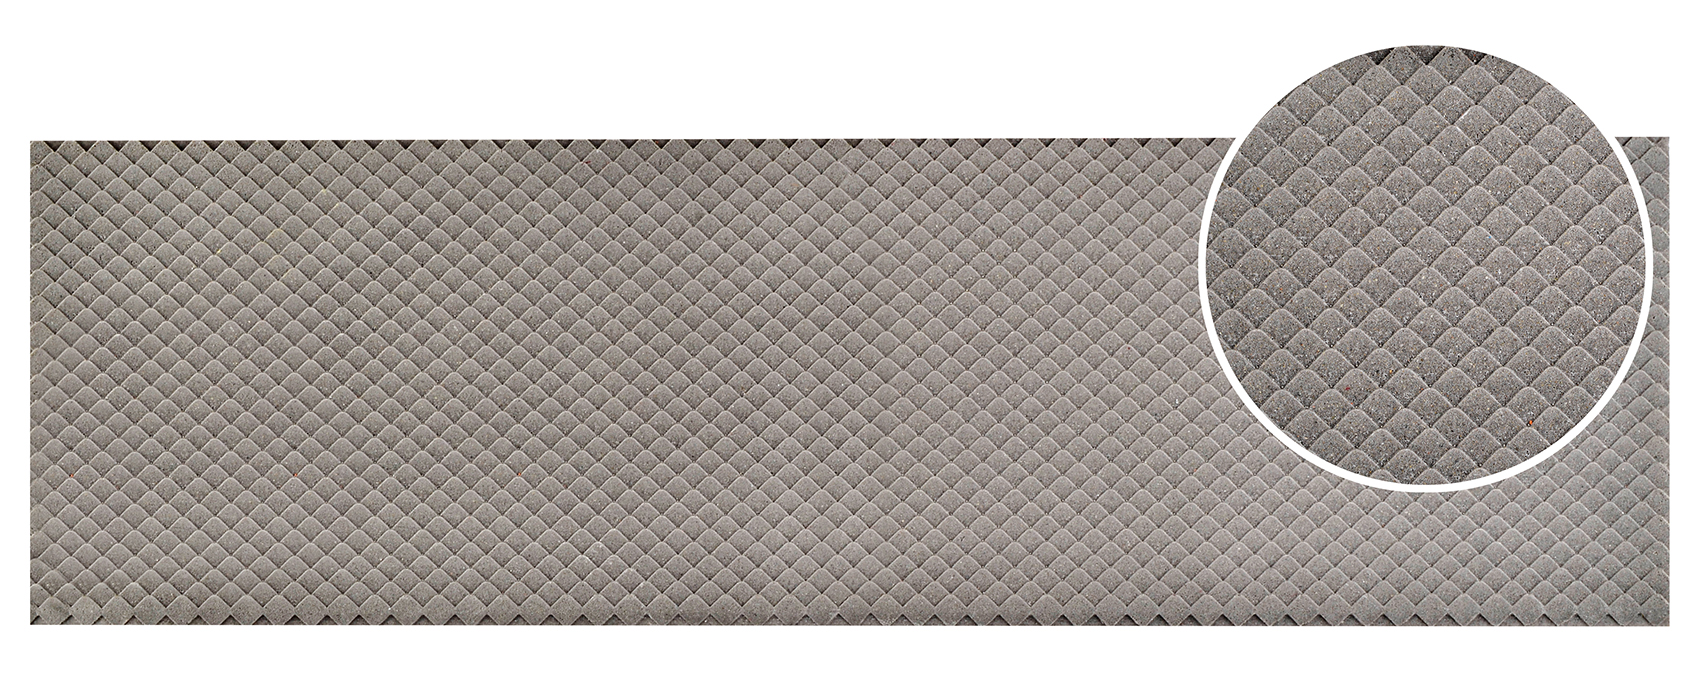 0 Dachplatte Schiefer in Wabendeckungaus Steinkunst, L 54 x B 16,3 cm